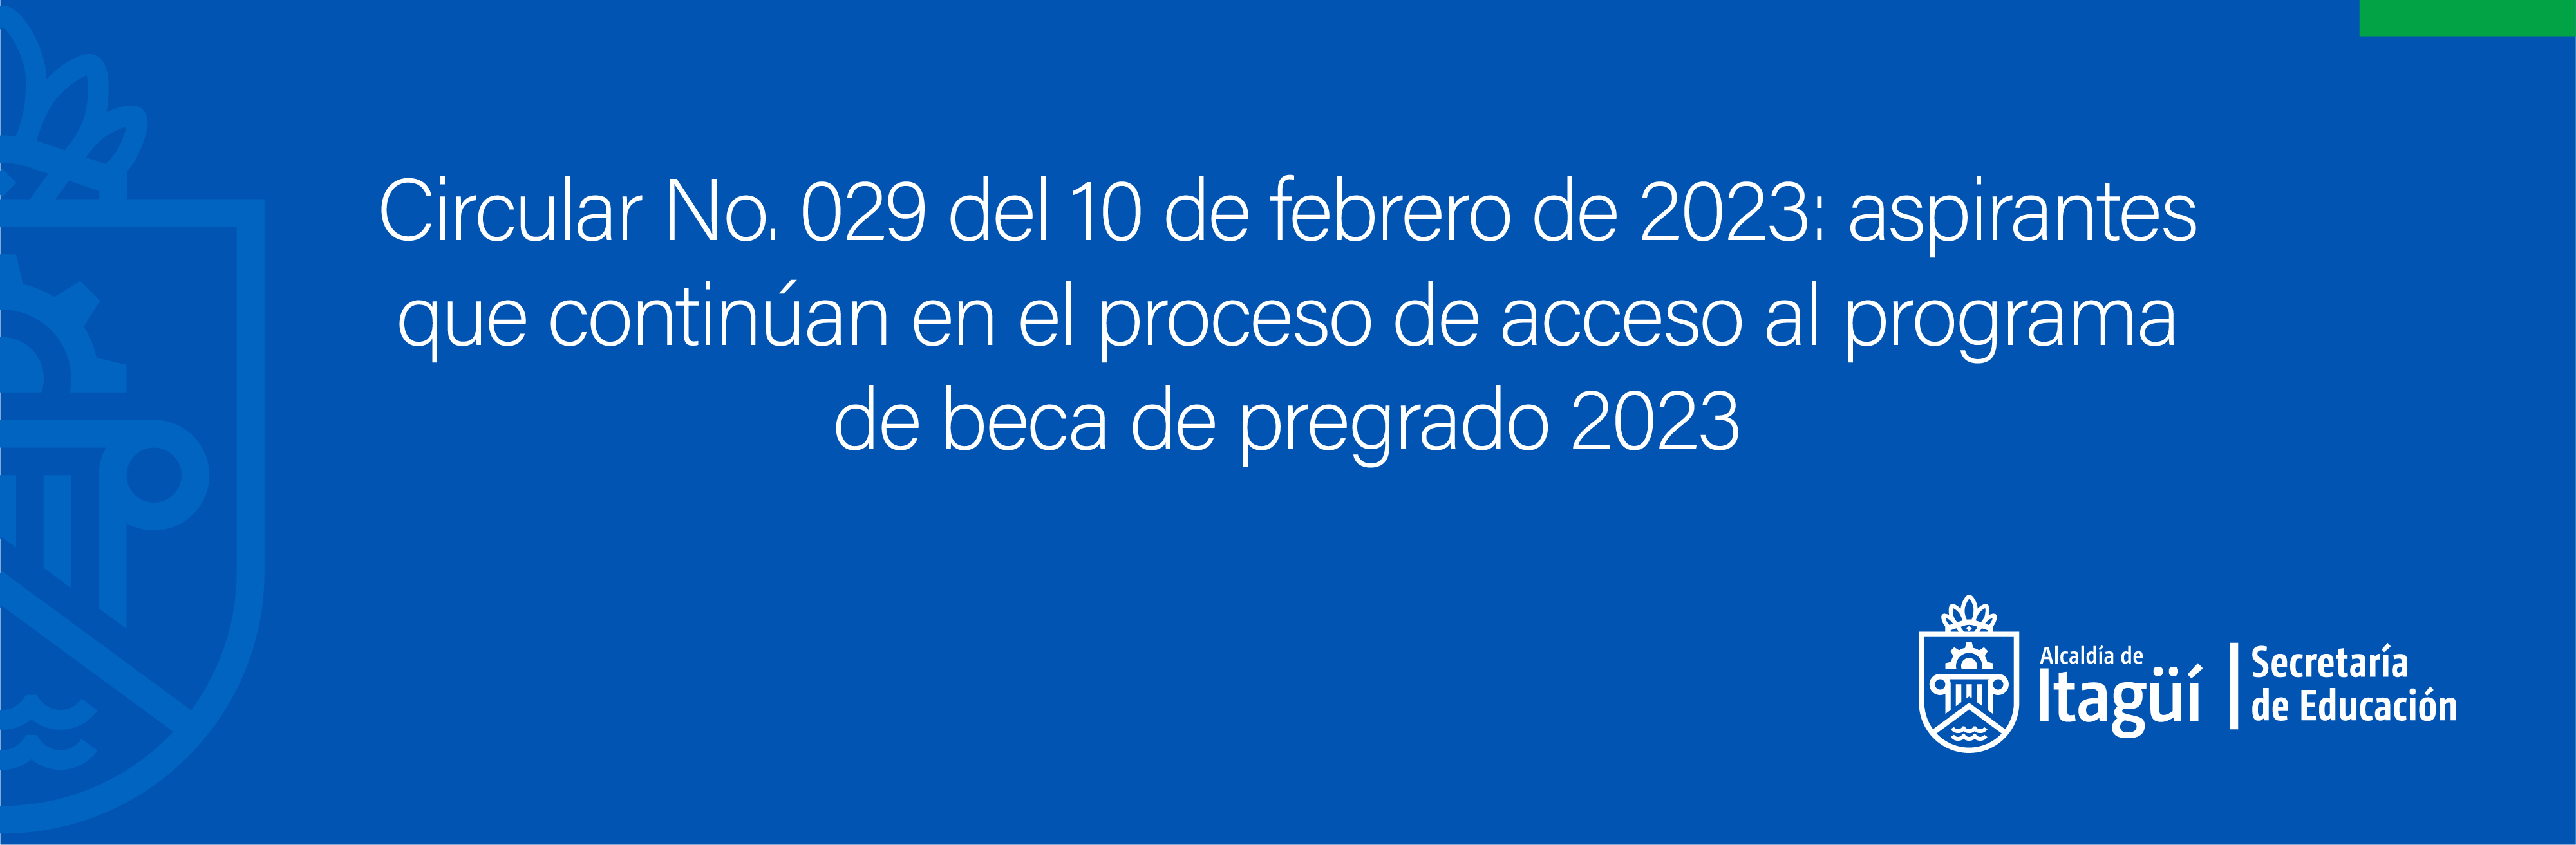 Circular No. 029 del 10 de febrero de 2023: aspirantes que continúan en el proceso de acceso al programa de beca de pregrado 2023